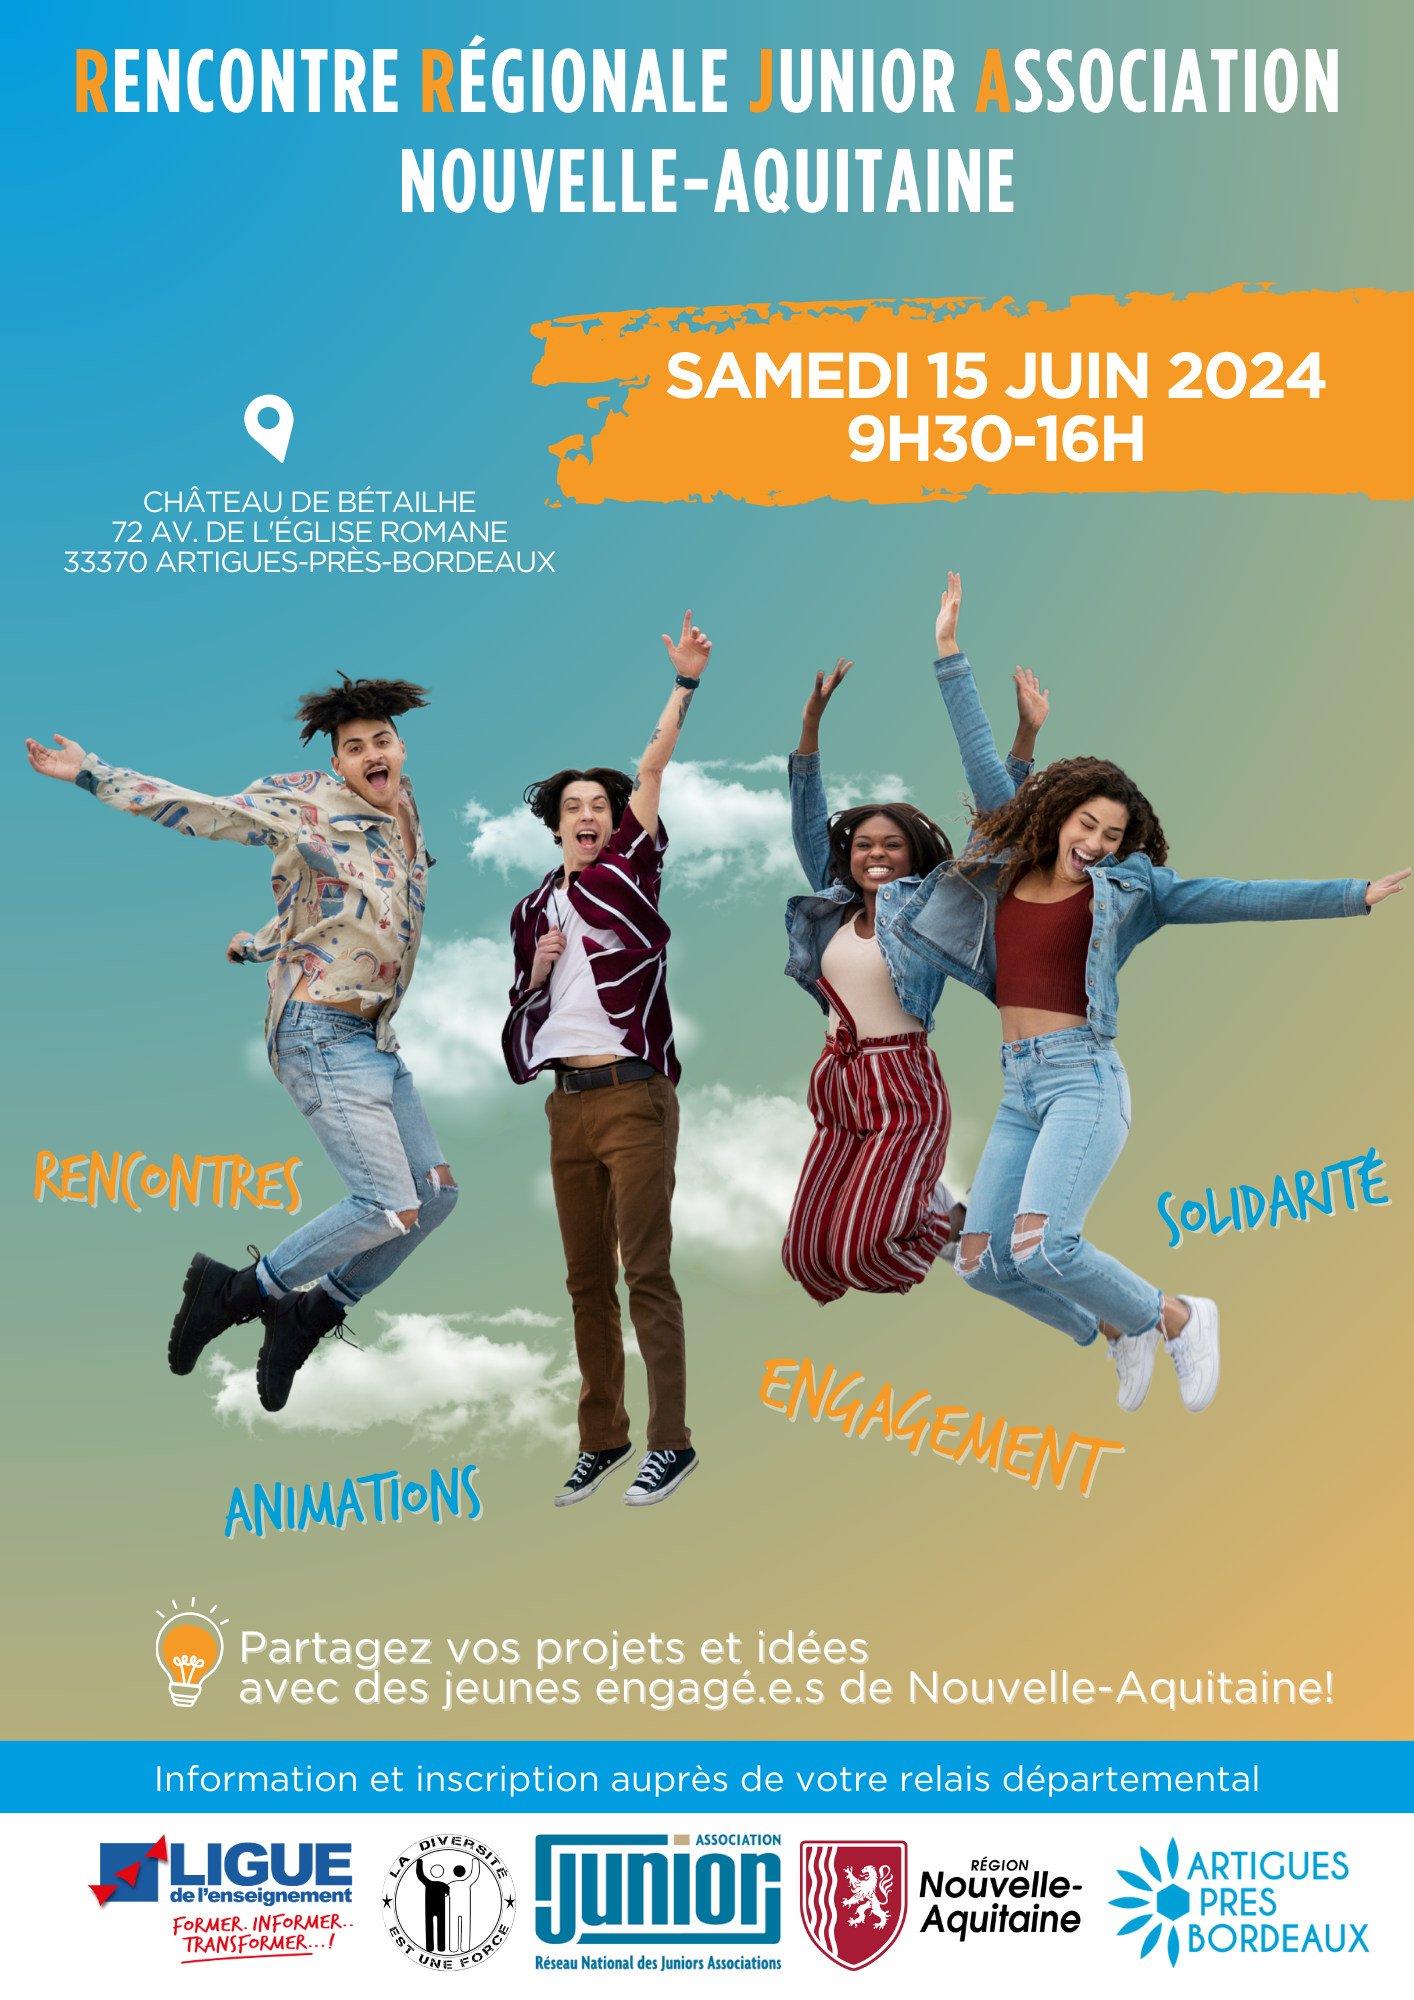 Rencontre Régionale des Juniors Associations de Nouvelle Aquitaine !